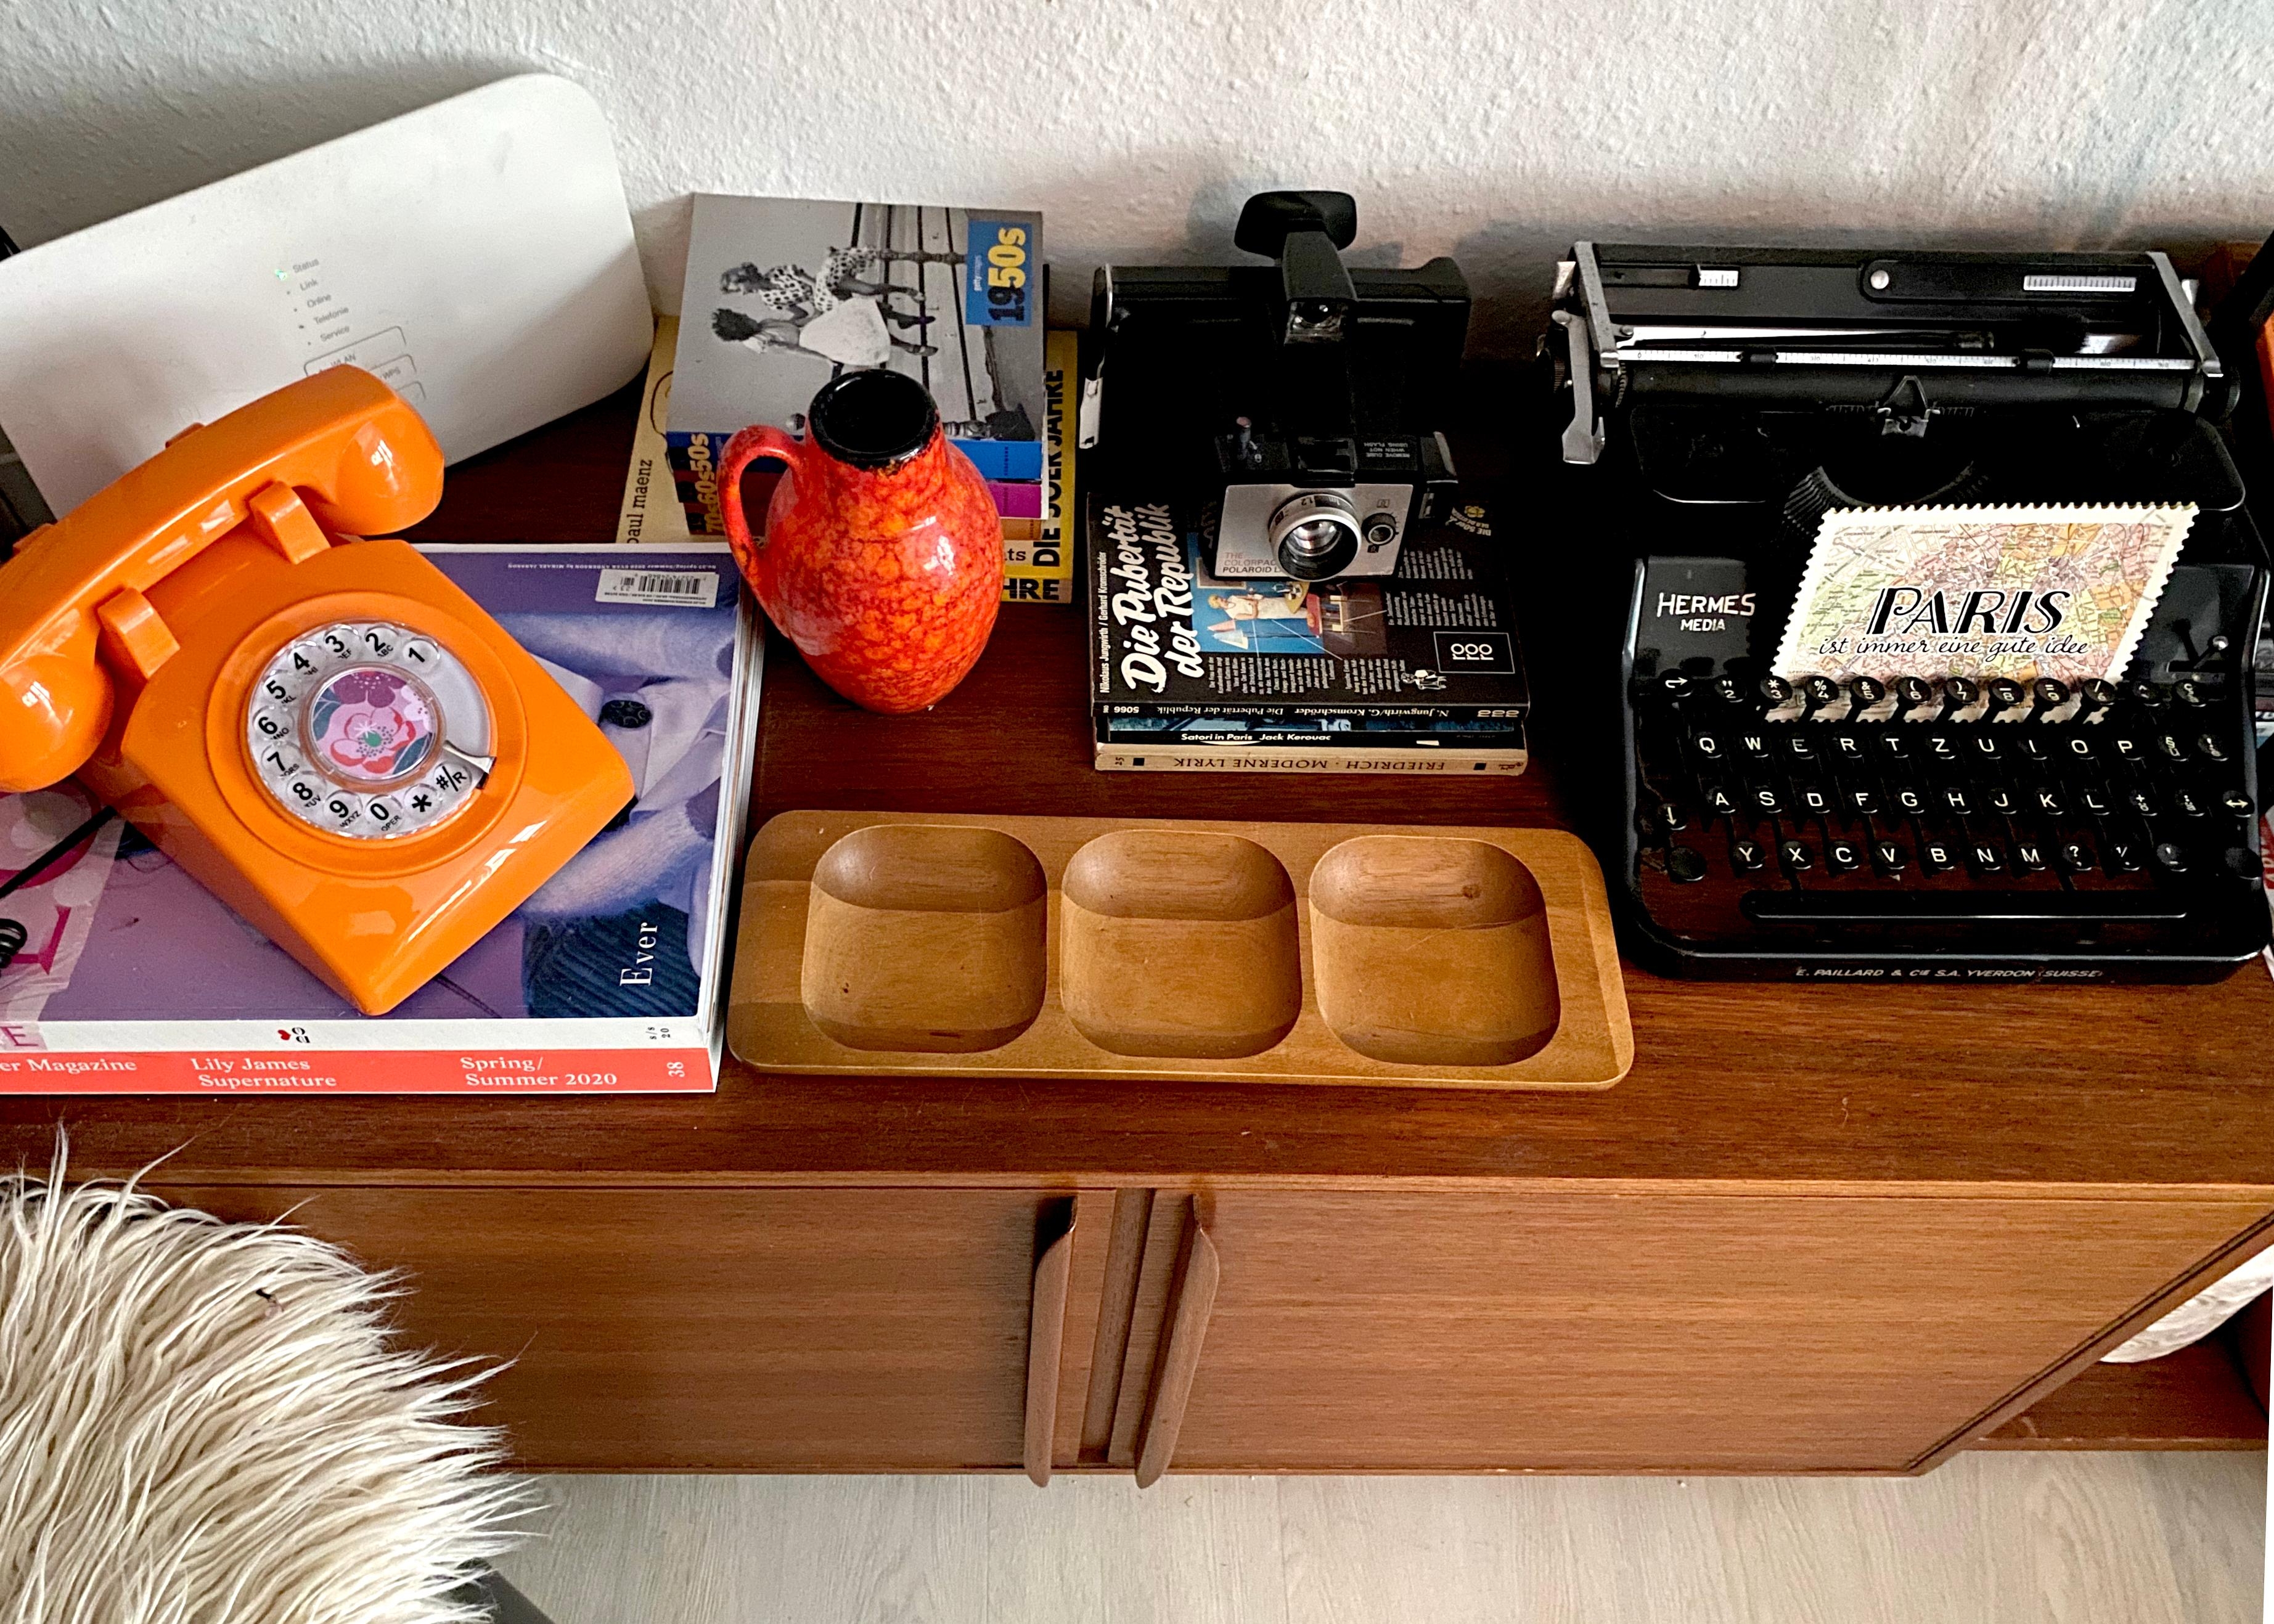 ich sammle Schreibmaschinen und Polaroid-Kameras #couchliebt #skandistyle #retro #schreibmaschine #polaroid